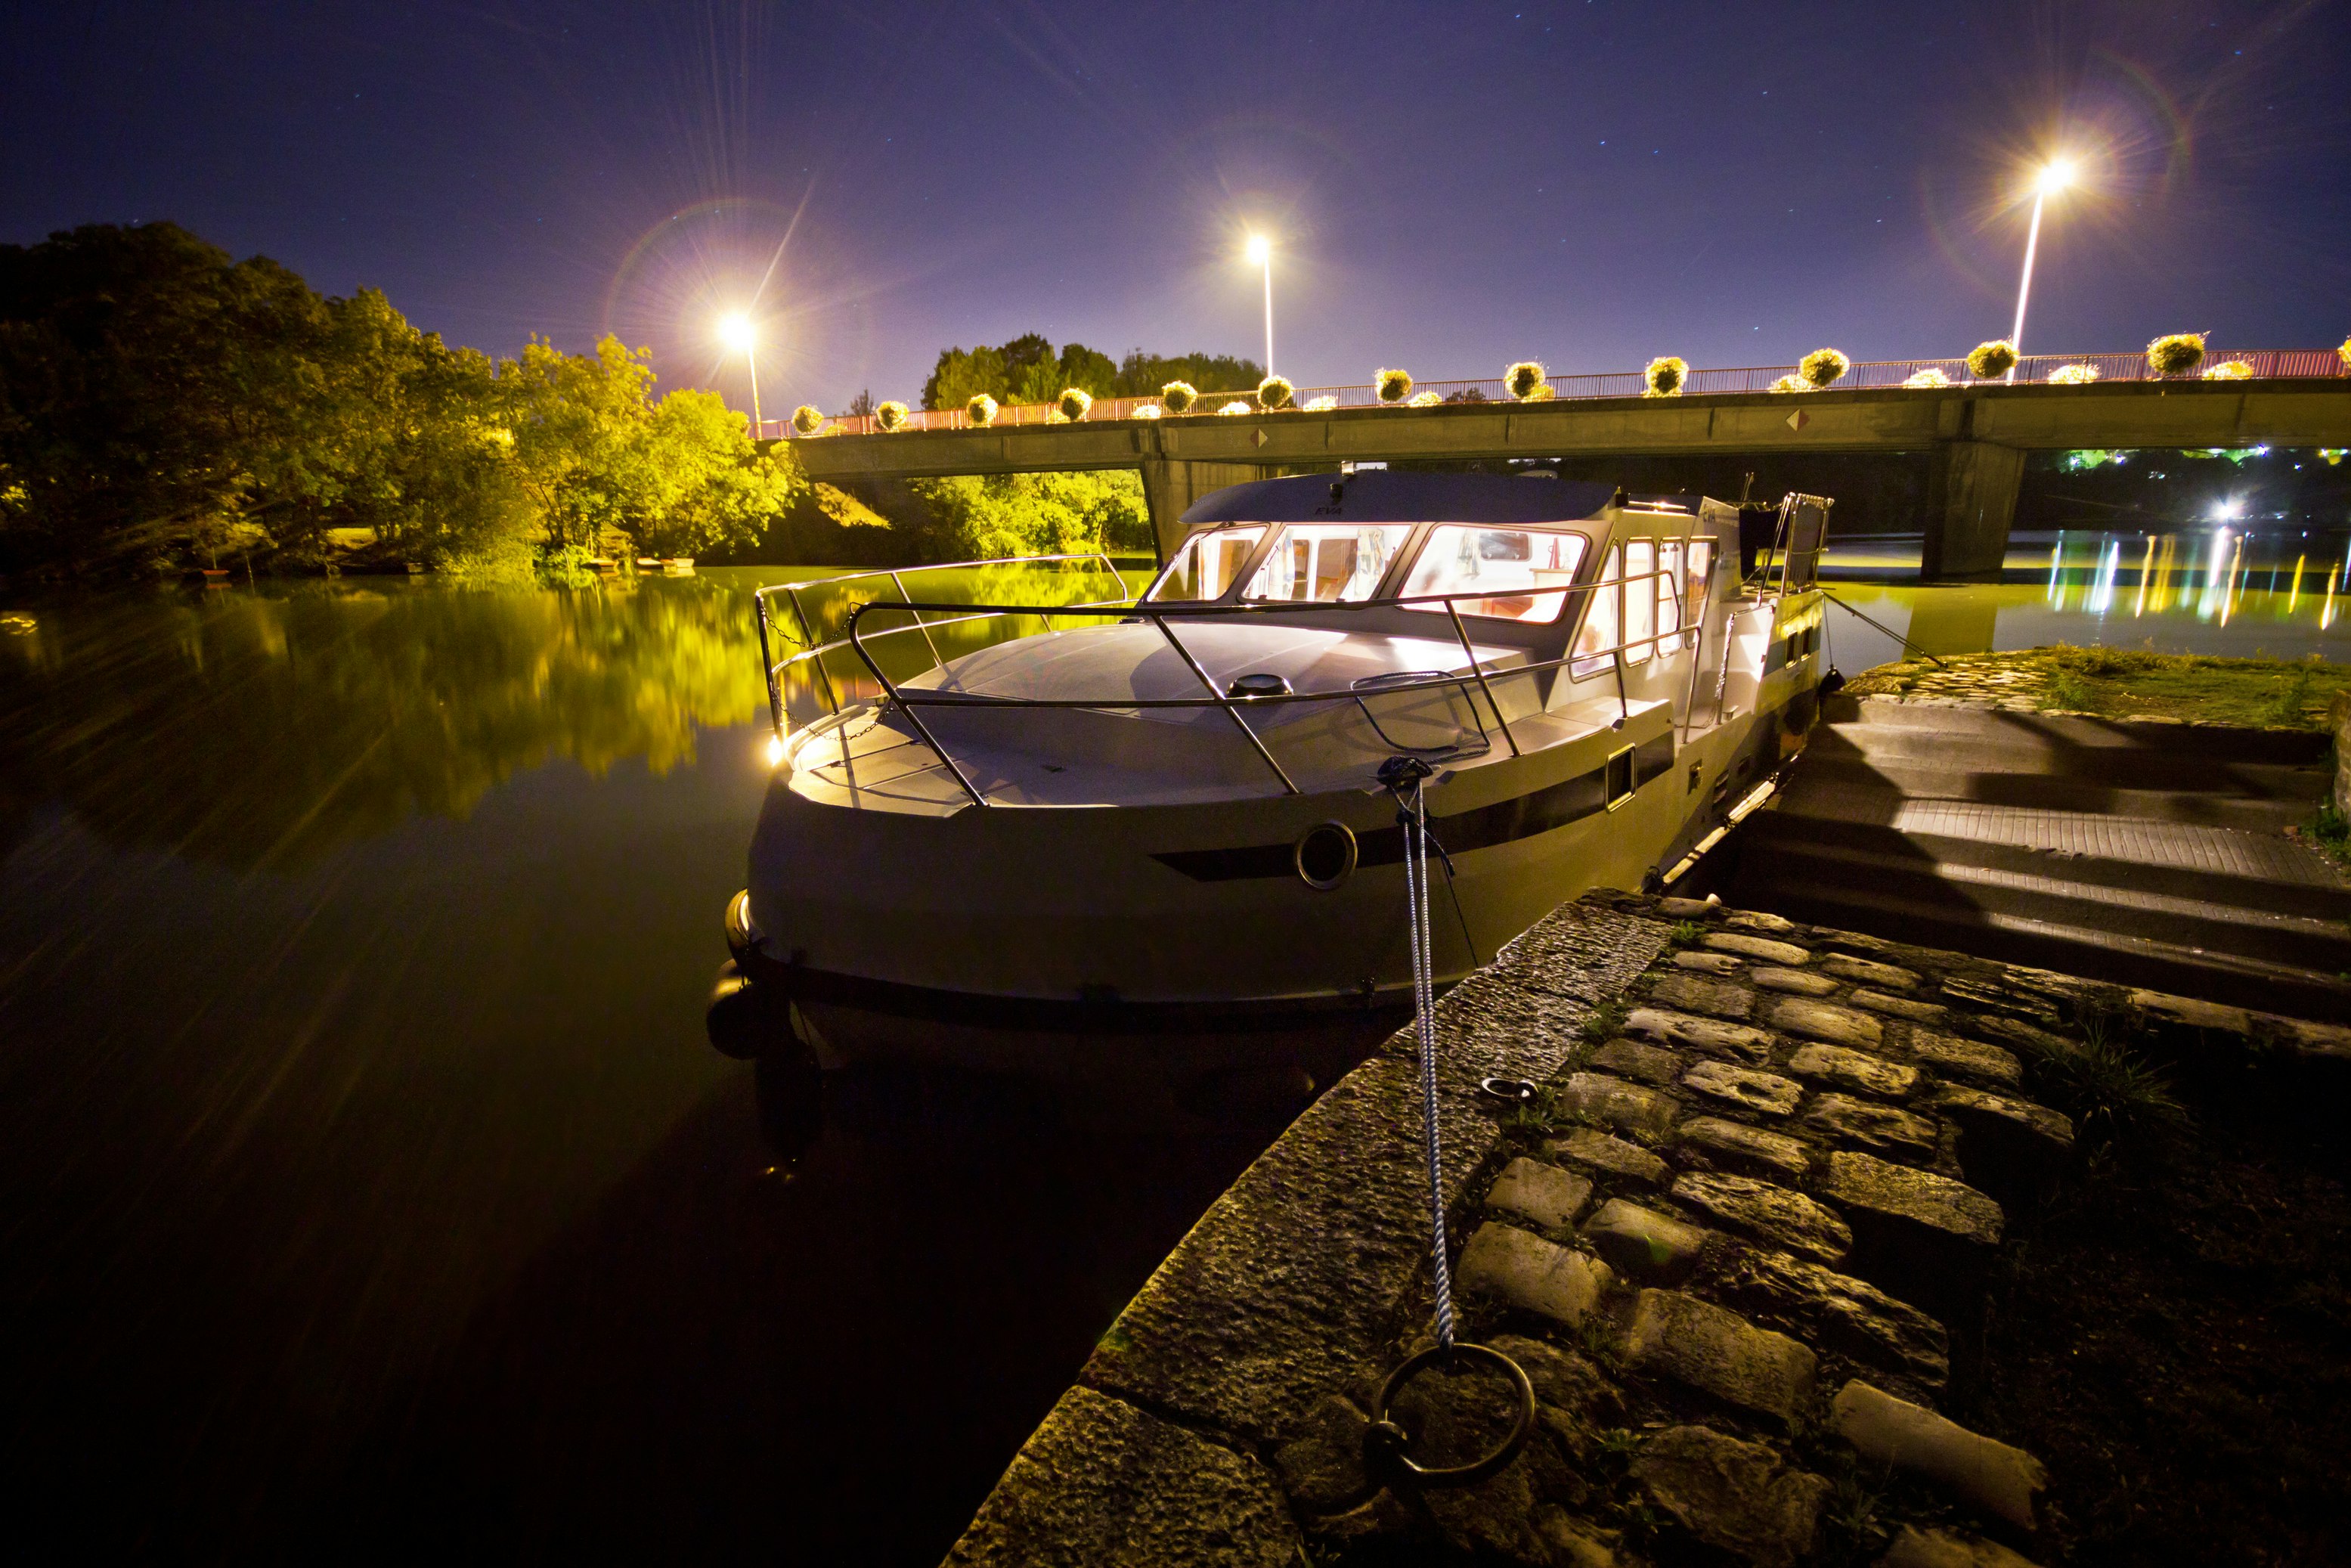 Houseboat ancorado durante a noite